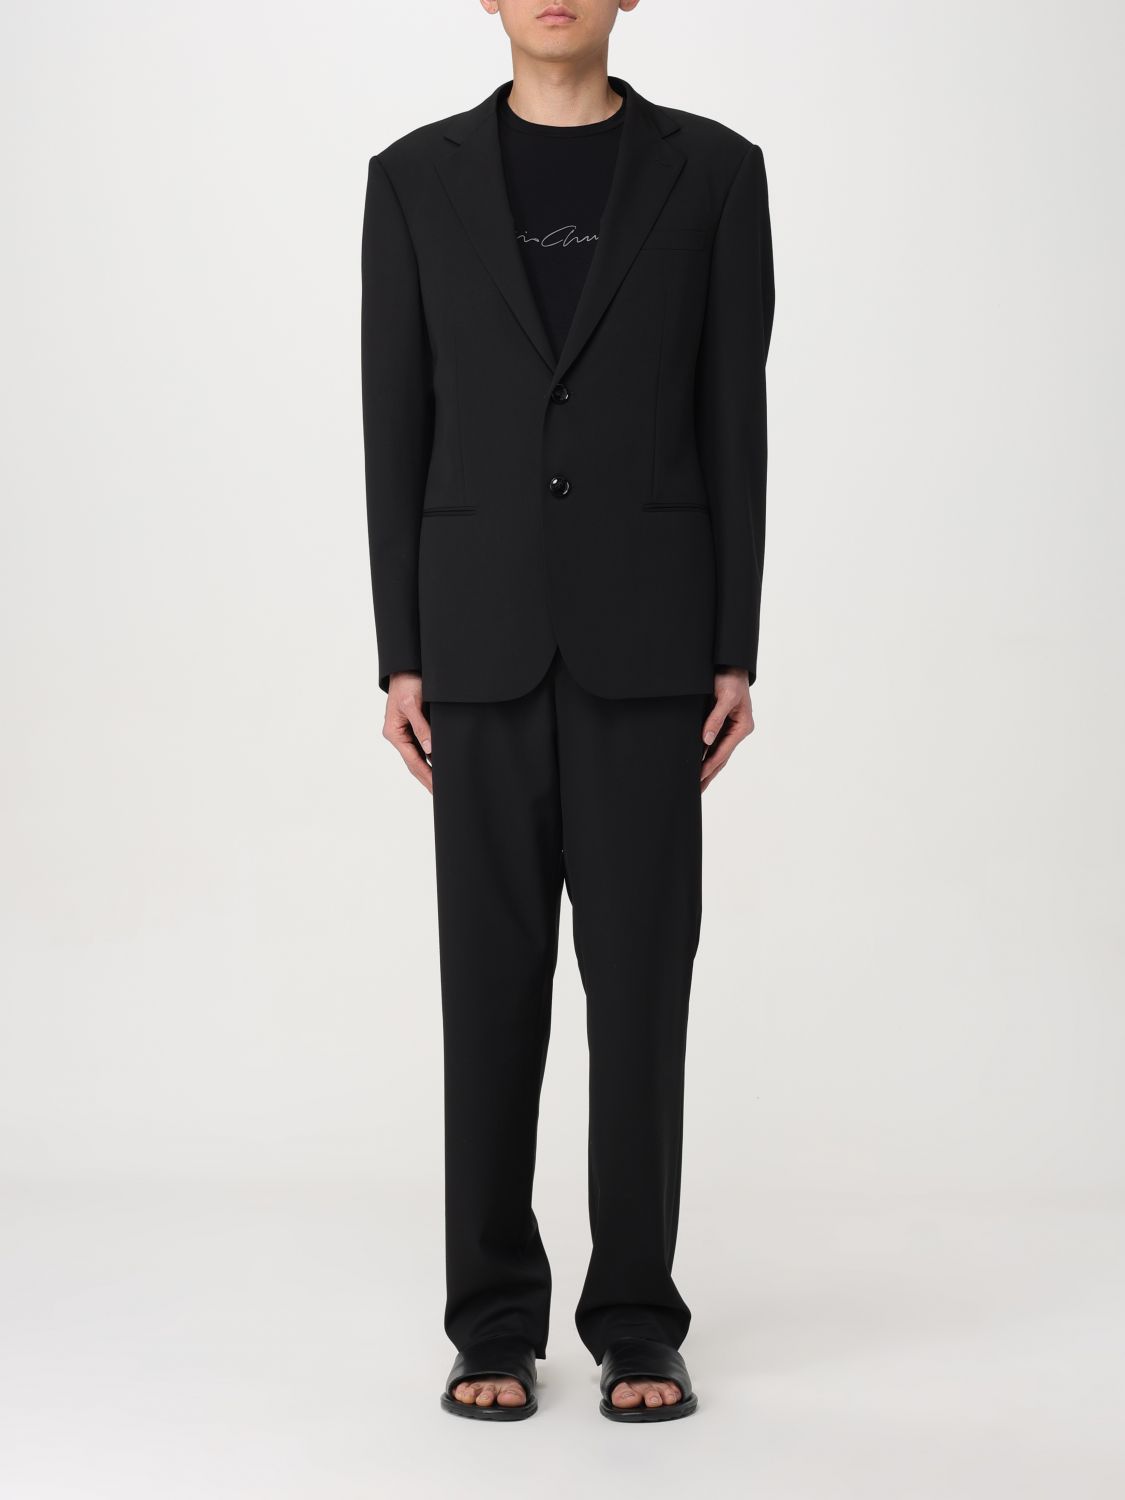 Giorgio Armani Suit  Men Color Black